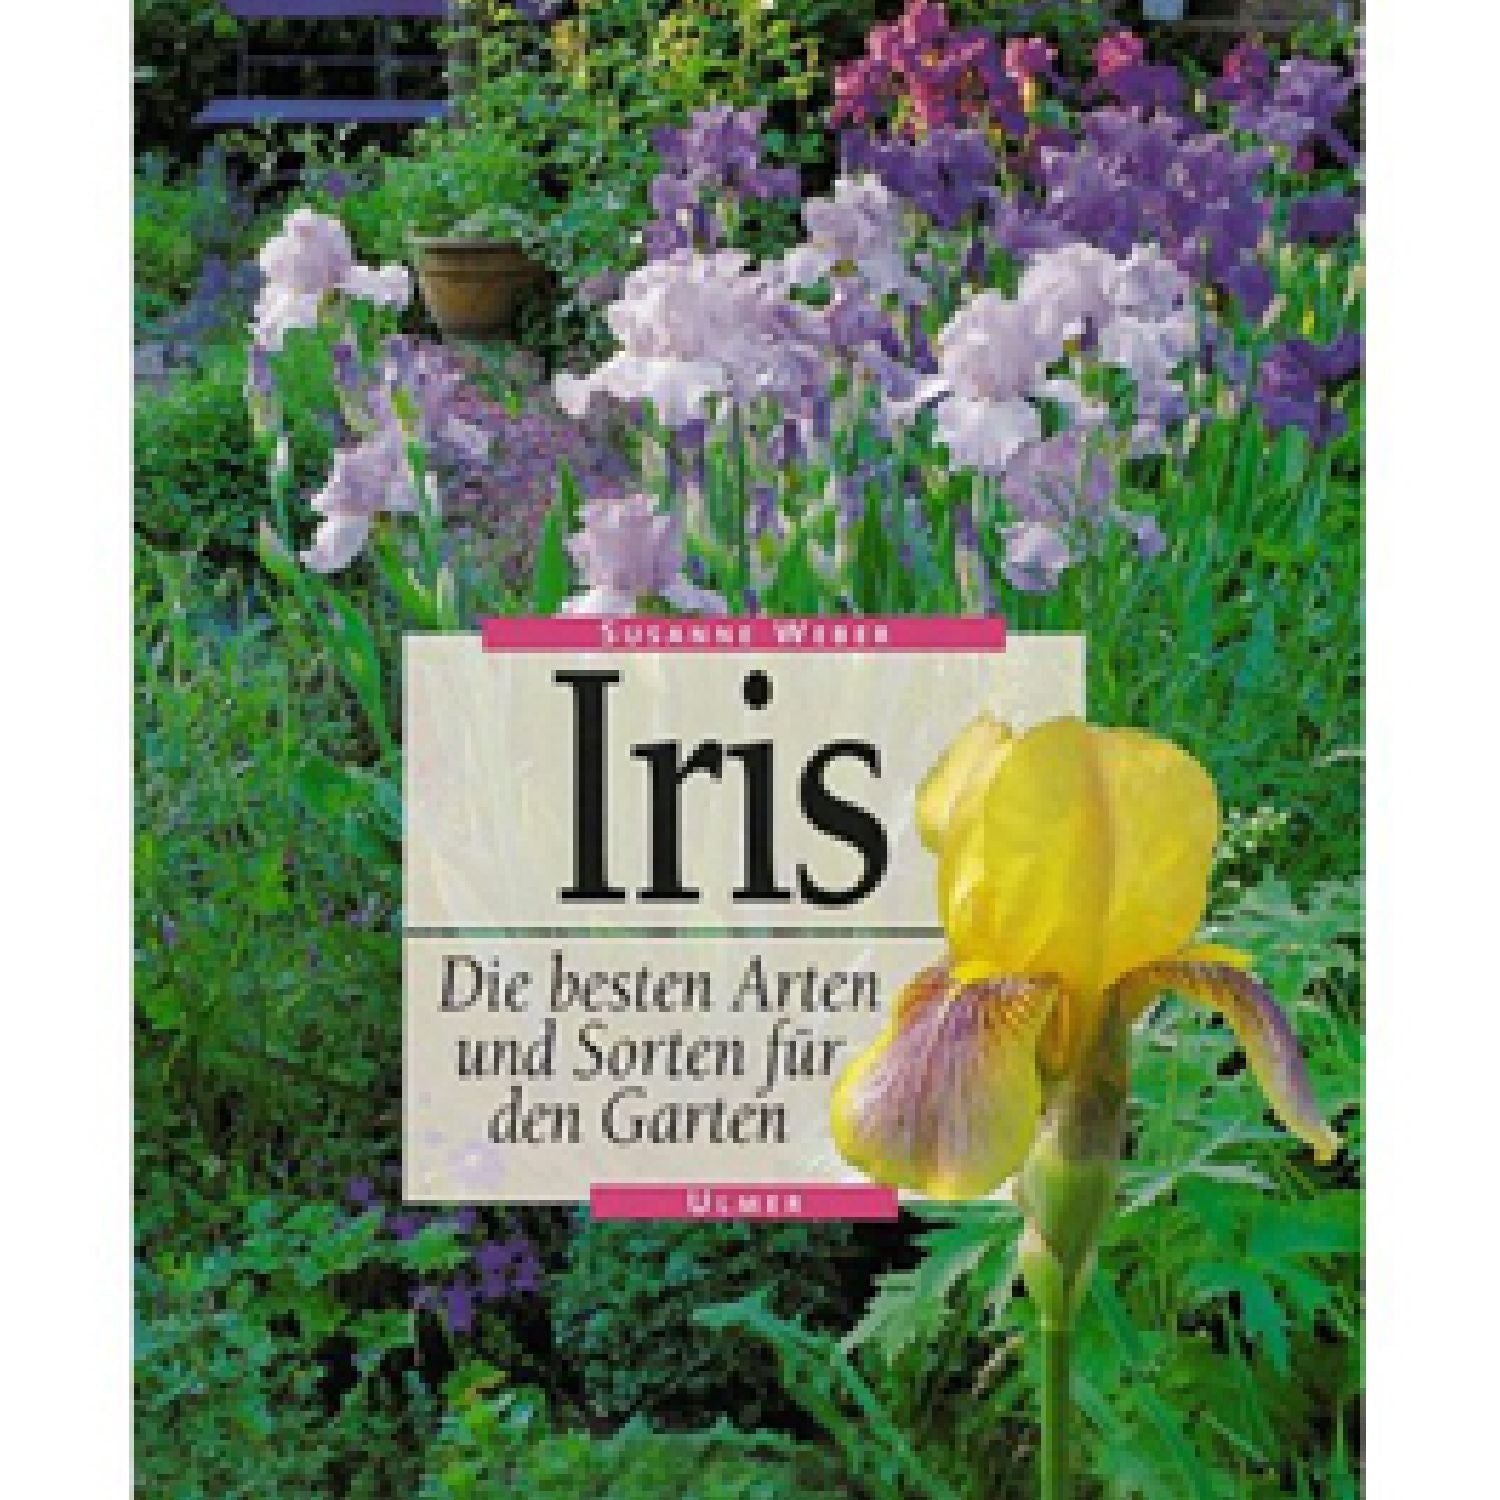 Iris - Die besten Arten und Sorten Susanne Weber